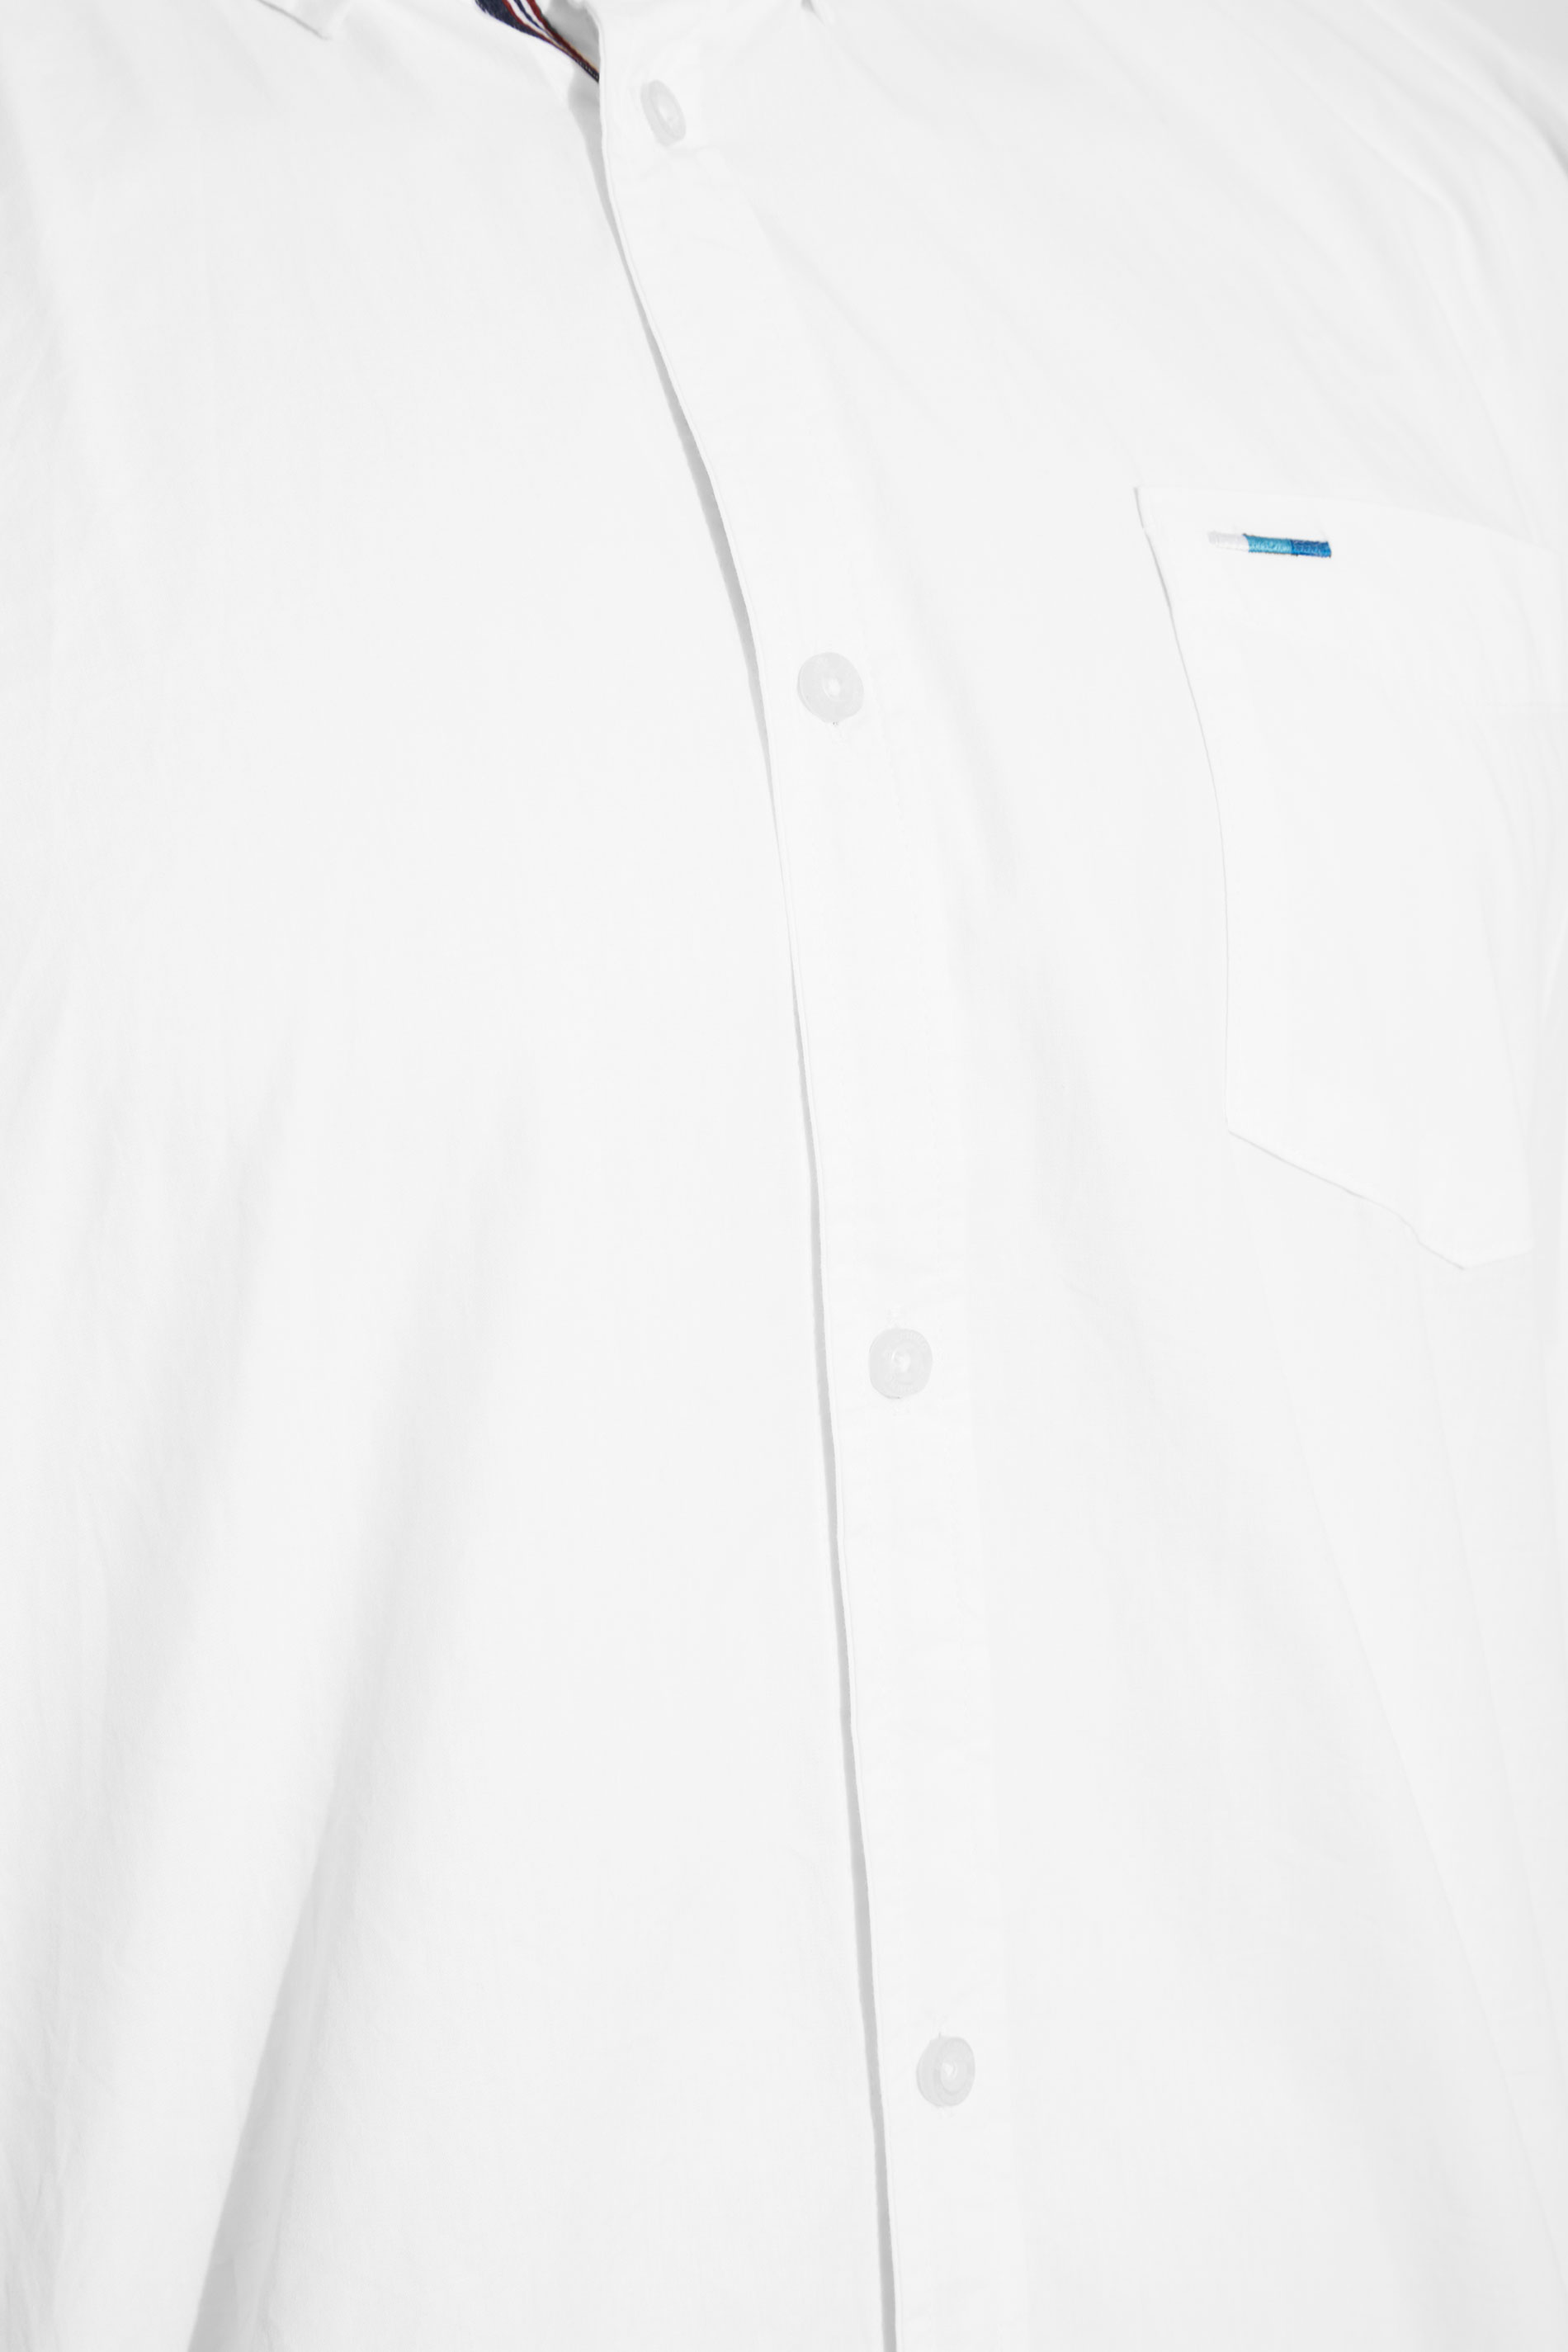 BadRhino White Cotton Poplin Short Sleeve Shirt | BadRhino 2